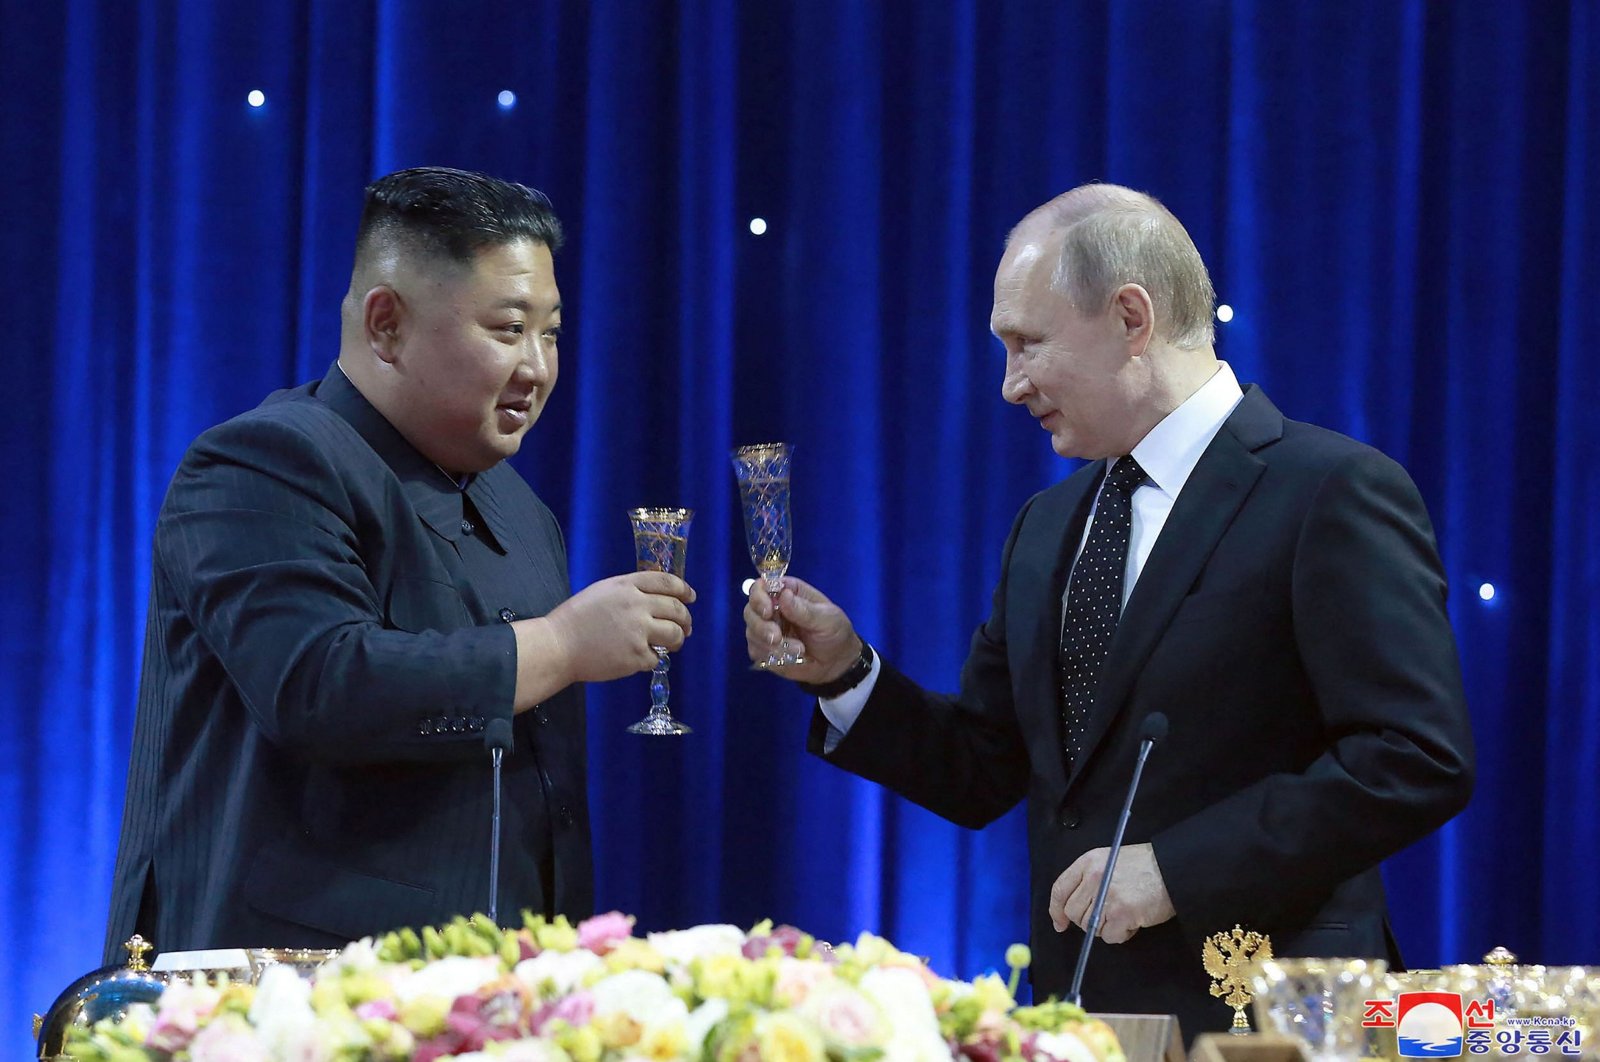 Moscow confirms N. Korea’s Kim heading to Russia to meet Putin